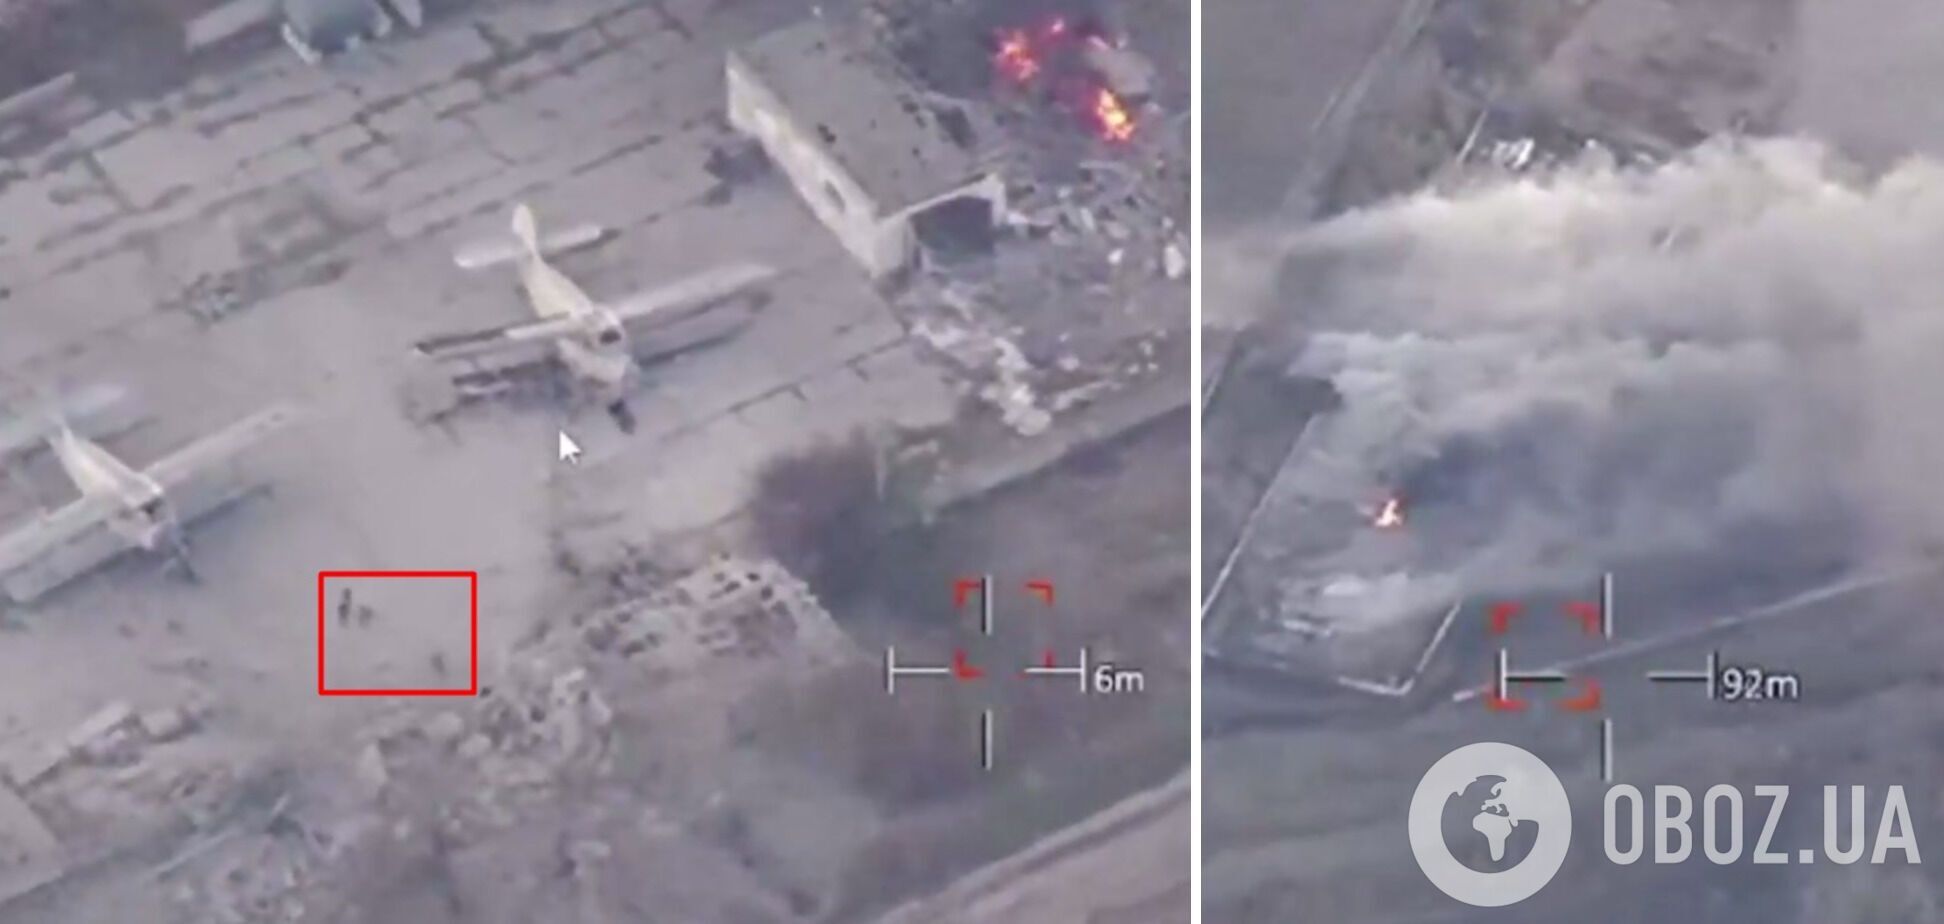 Скорректировали огонь авиации: ВСУ ударили по российской базе на Херсонщине. Видео